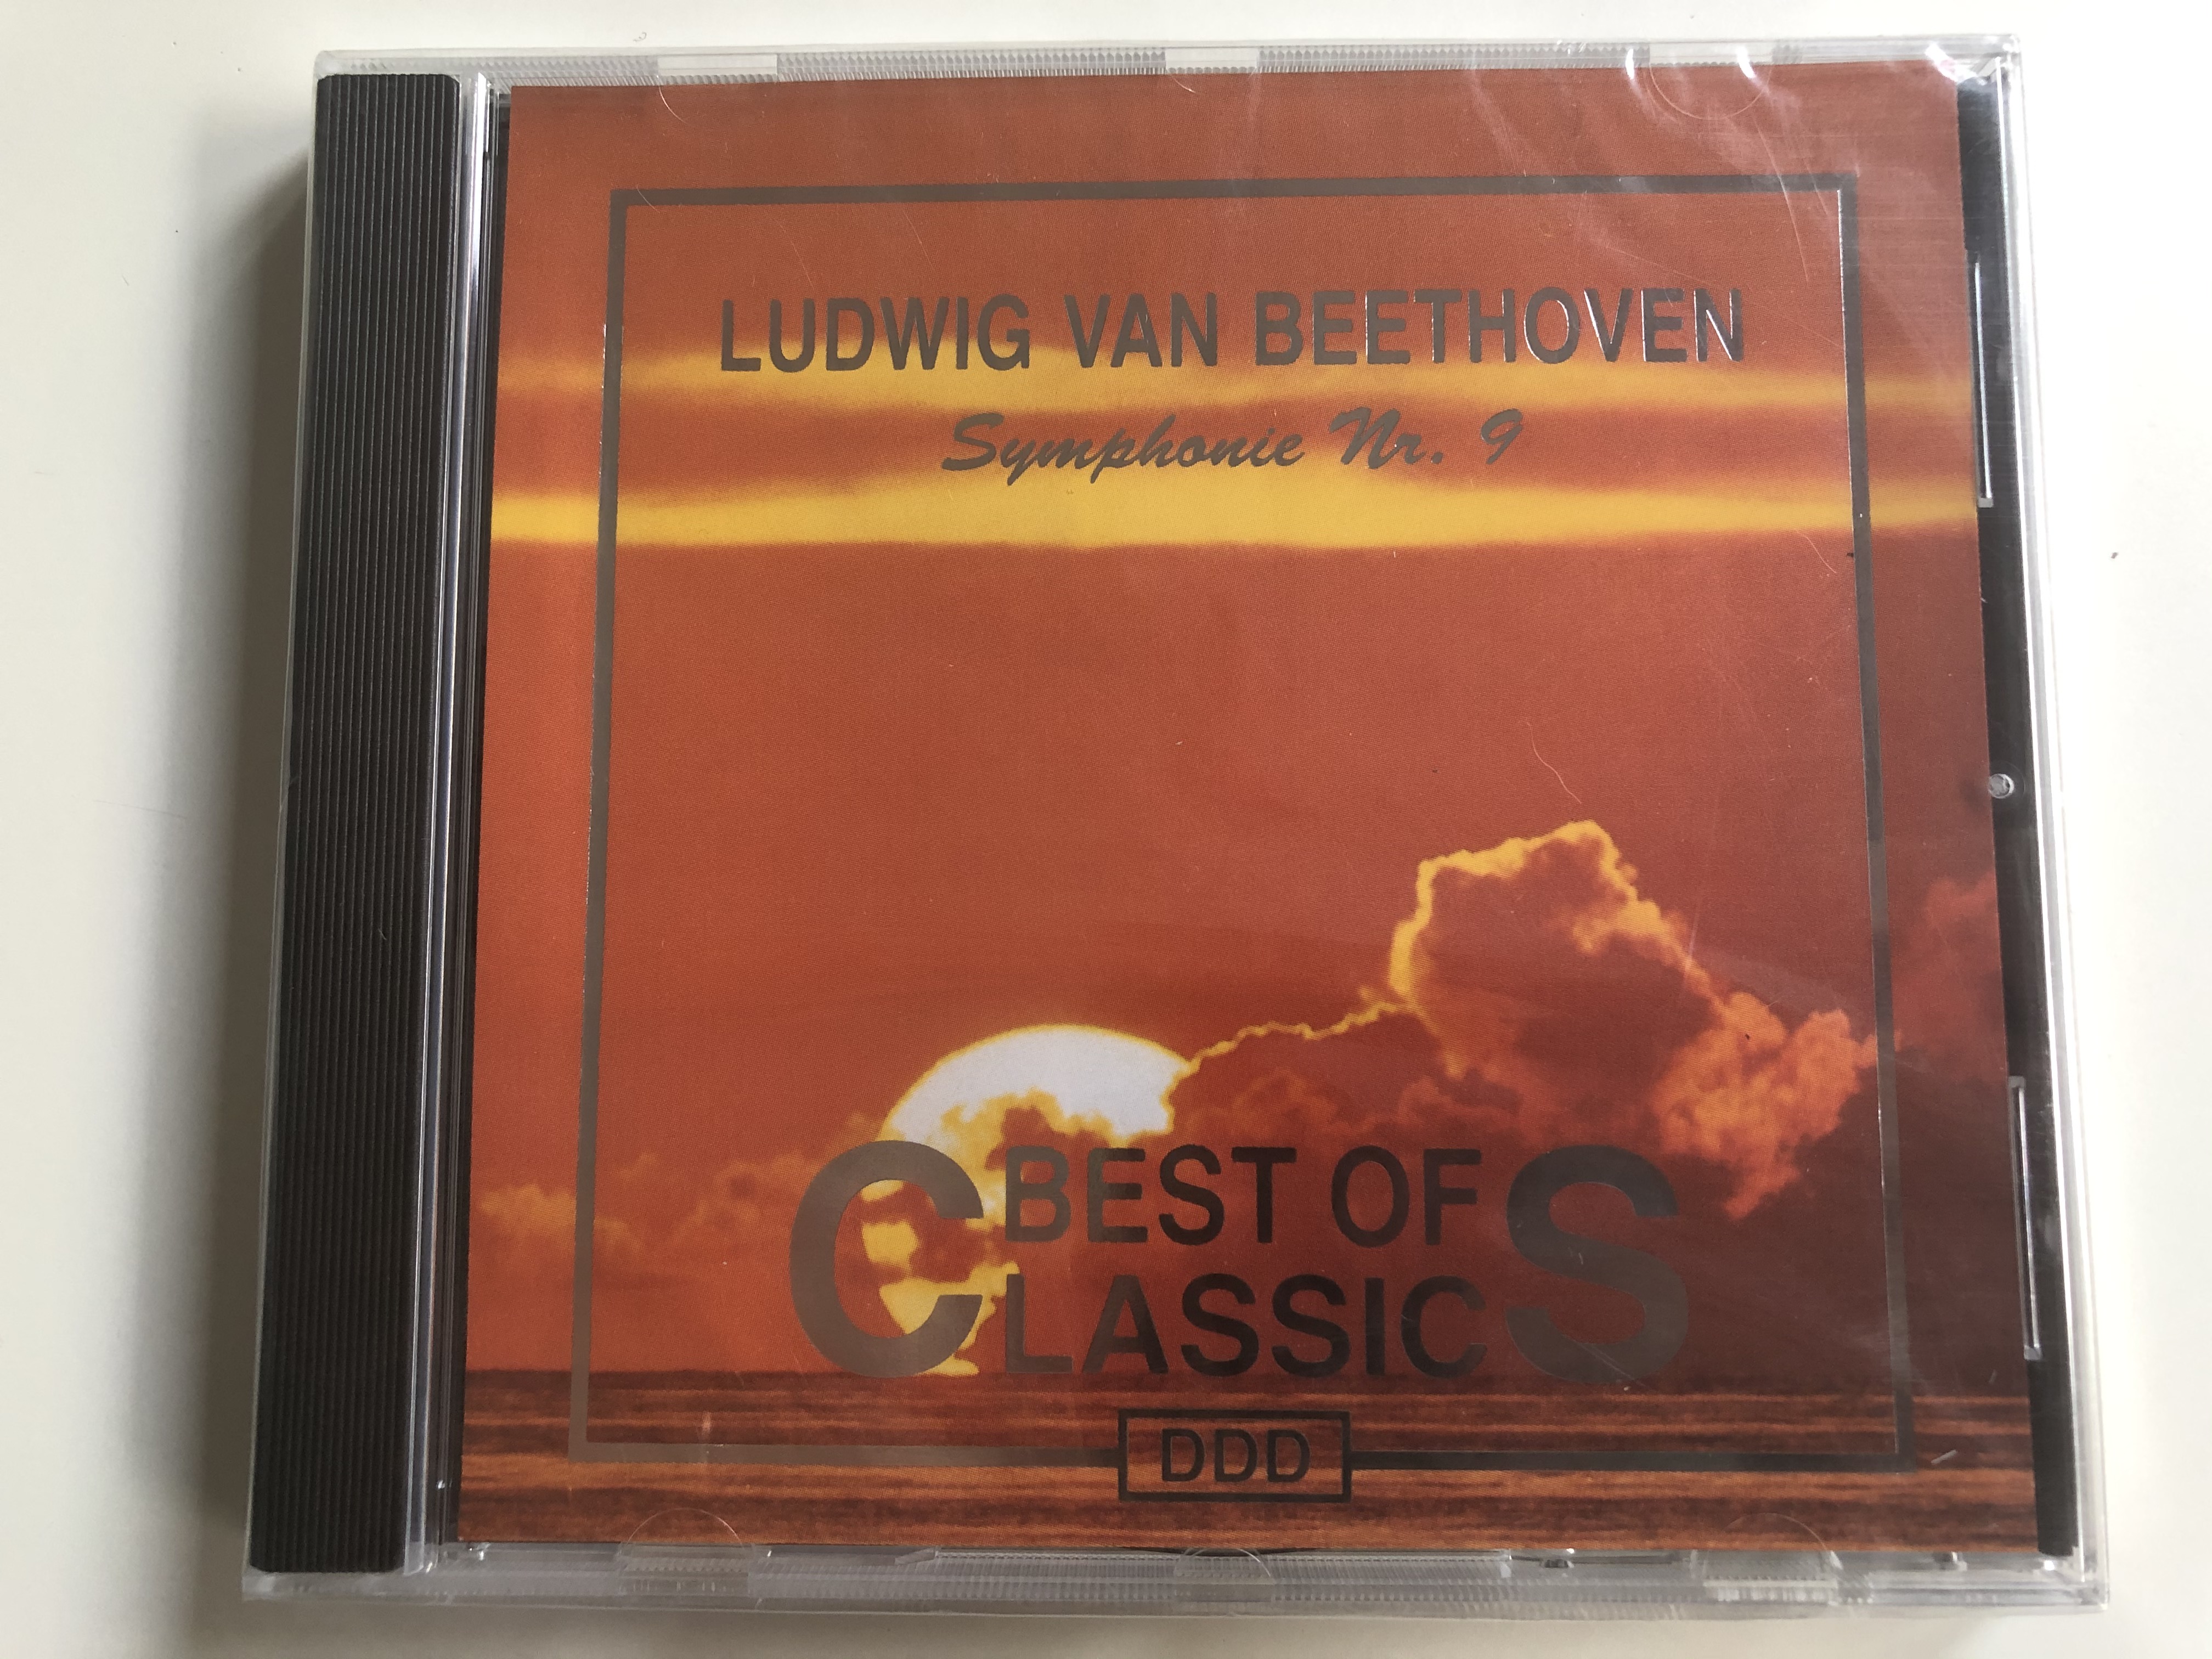 ludwig-van-beethoven-symphonie-nr.-9-best-of-classics-pilz-audio-cd-446974-2-1-.jpg